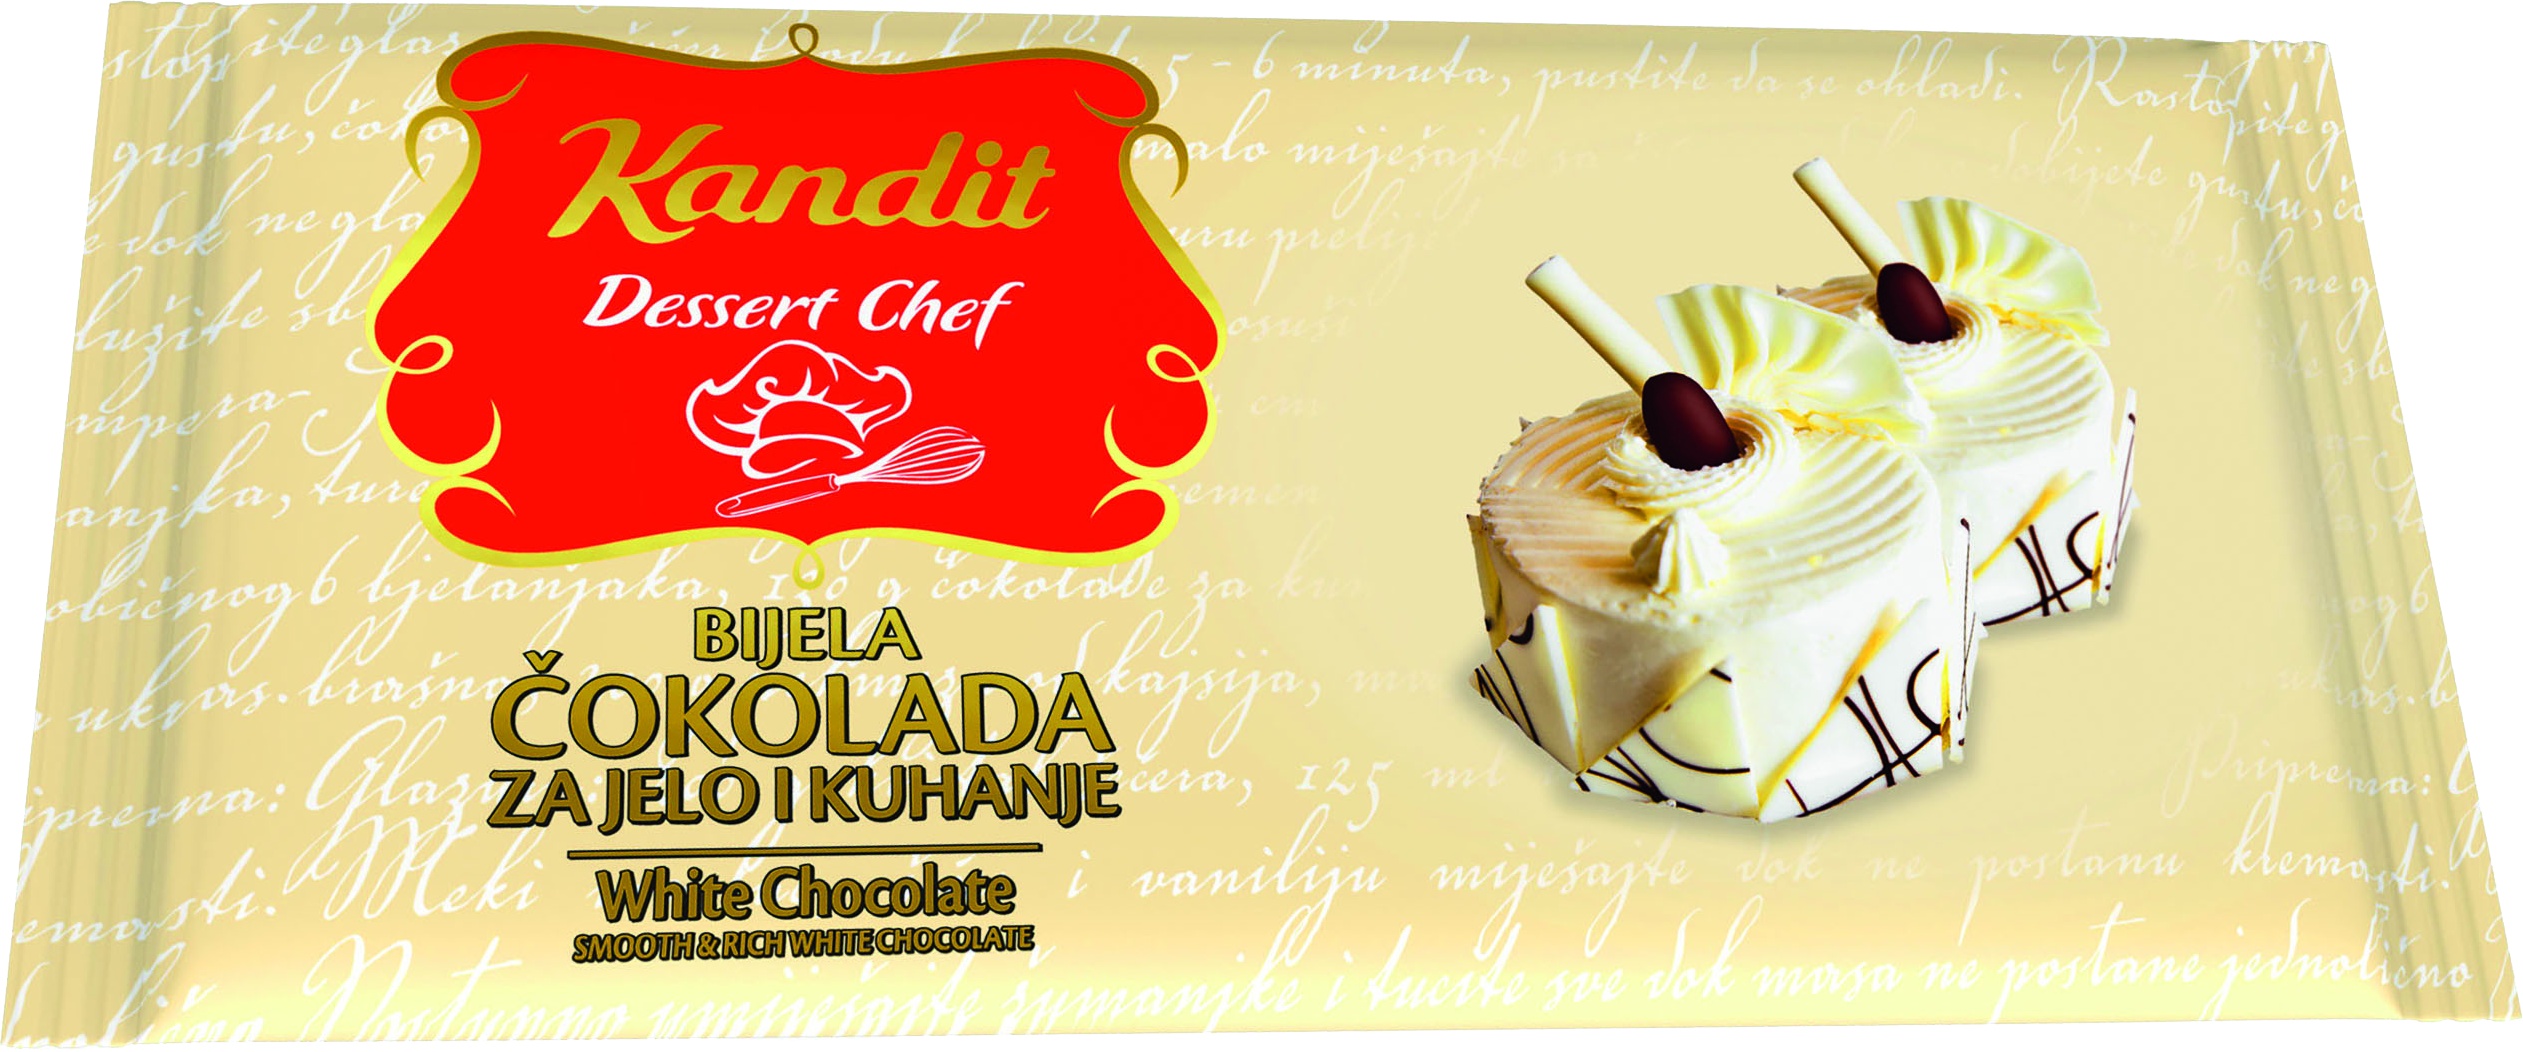 Slika za Čokolada za kuvanje bela Kandit dessert chef 200g